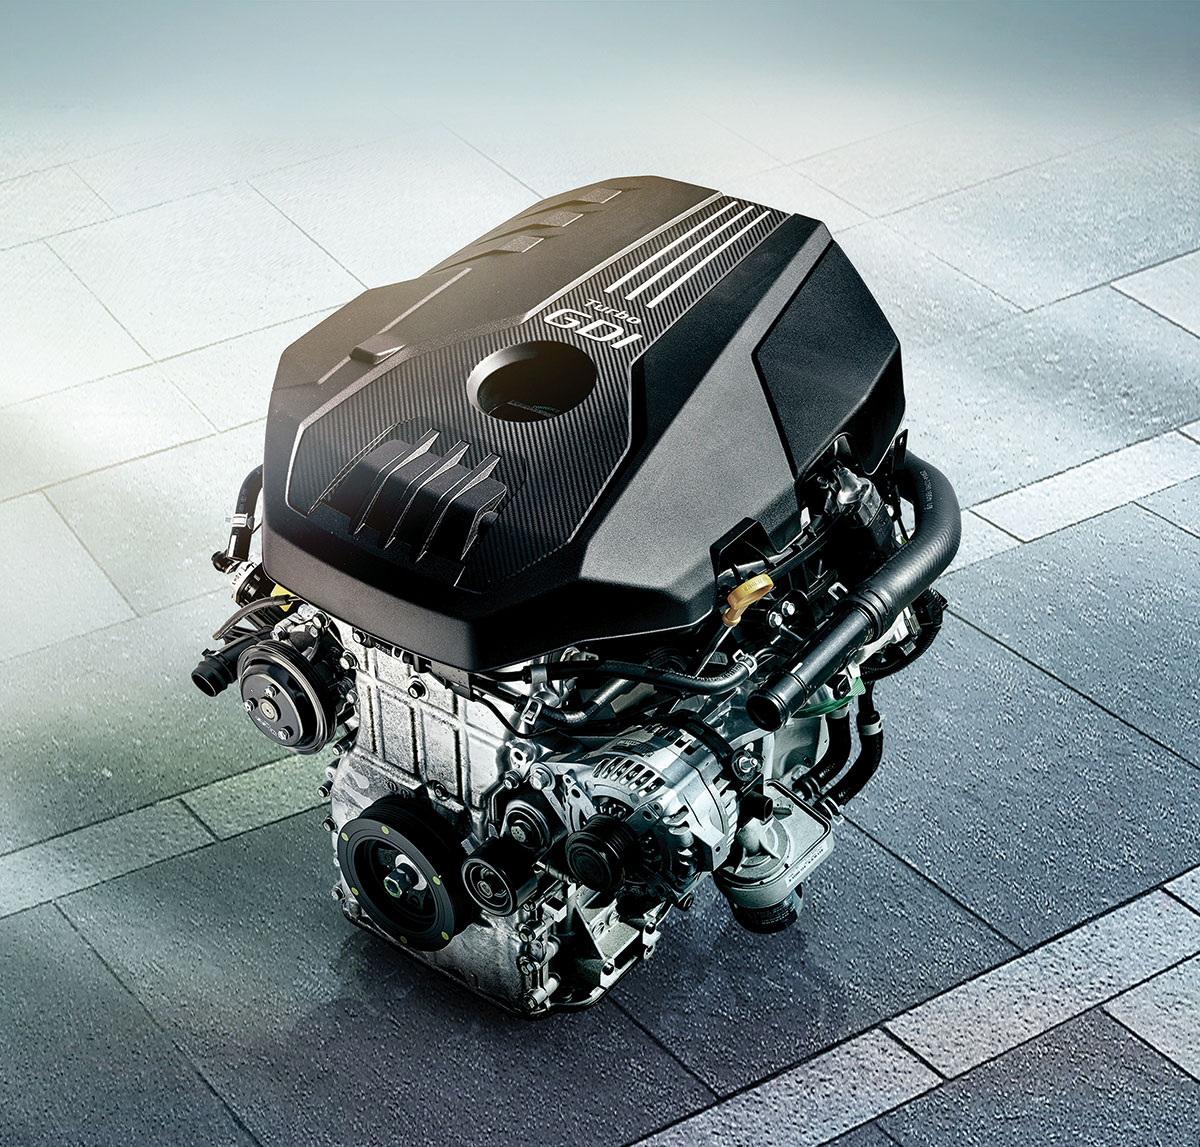 2.0 升缸內直噴渦輪引擎可輸出 255ps 最大馬力與 36kgm 峰值扭力。